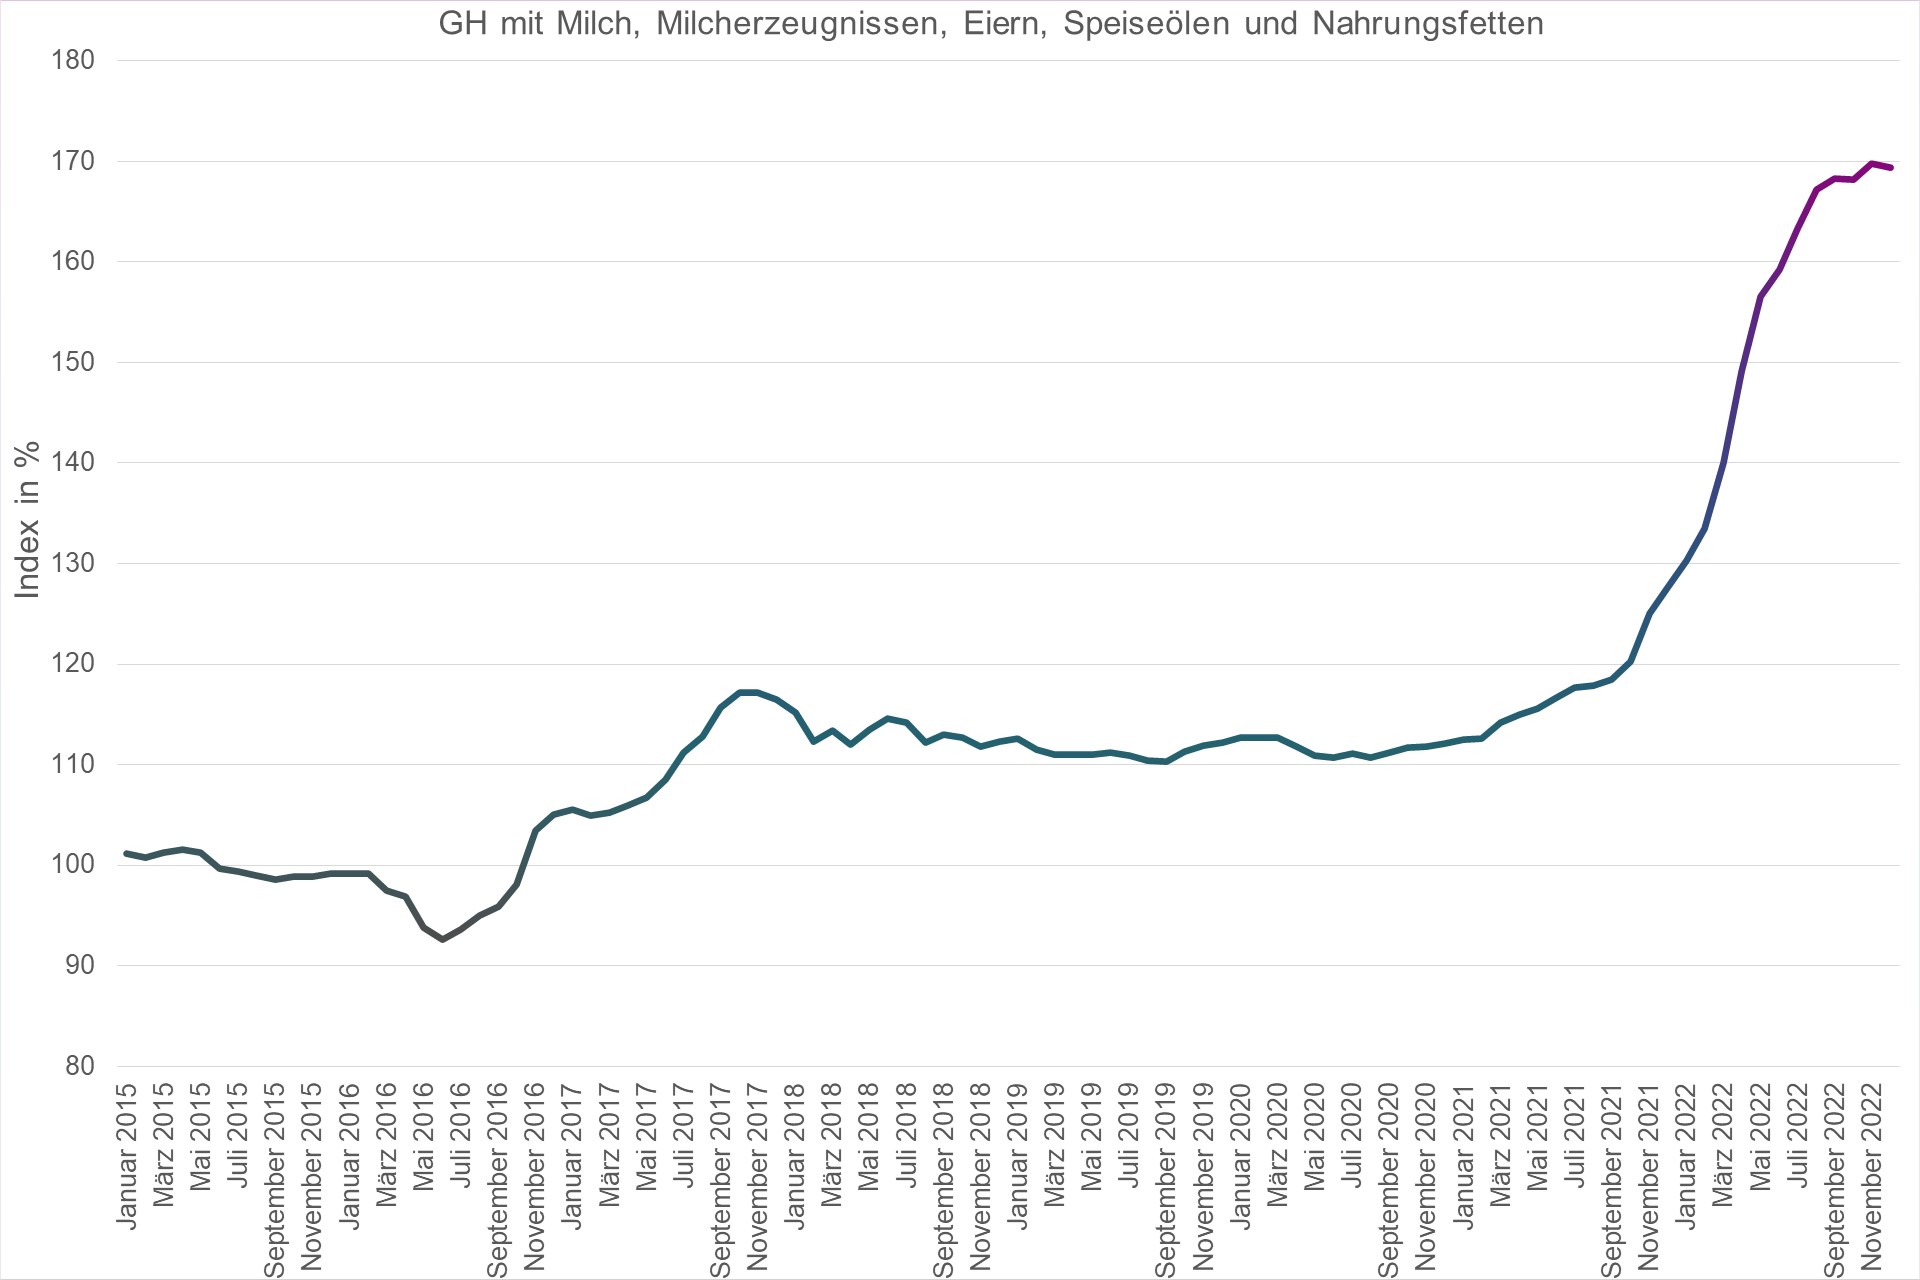 Grafik Preisindex Großhandel mit Milch, Milcherzeugnissen, Eiern, Speiseölen und Nahrungsfetten